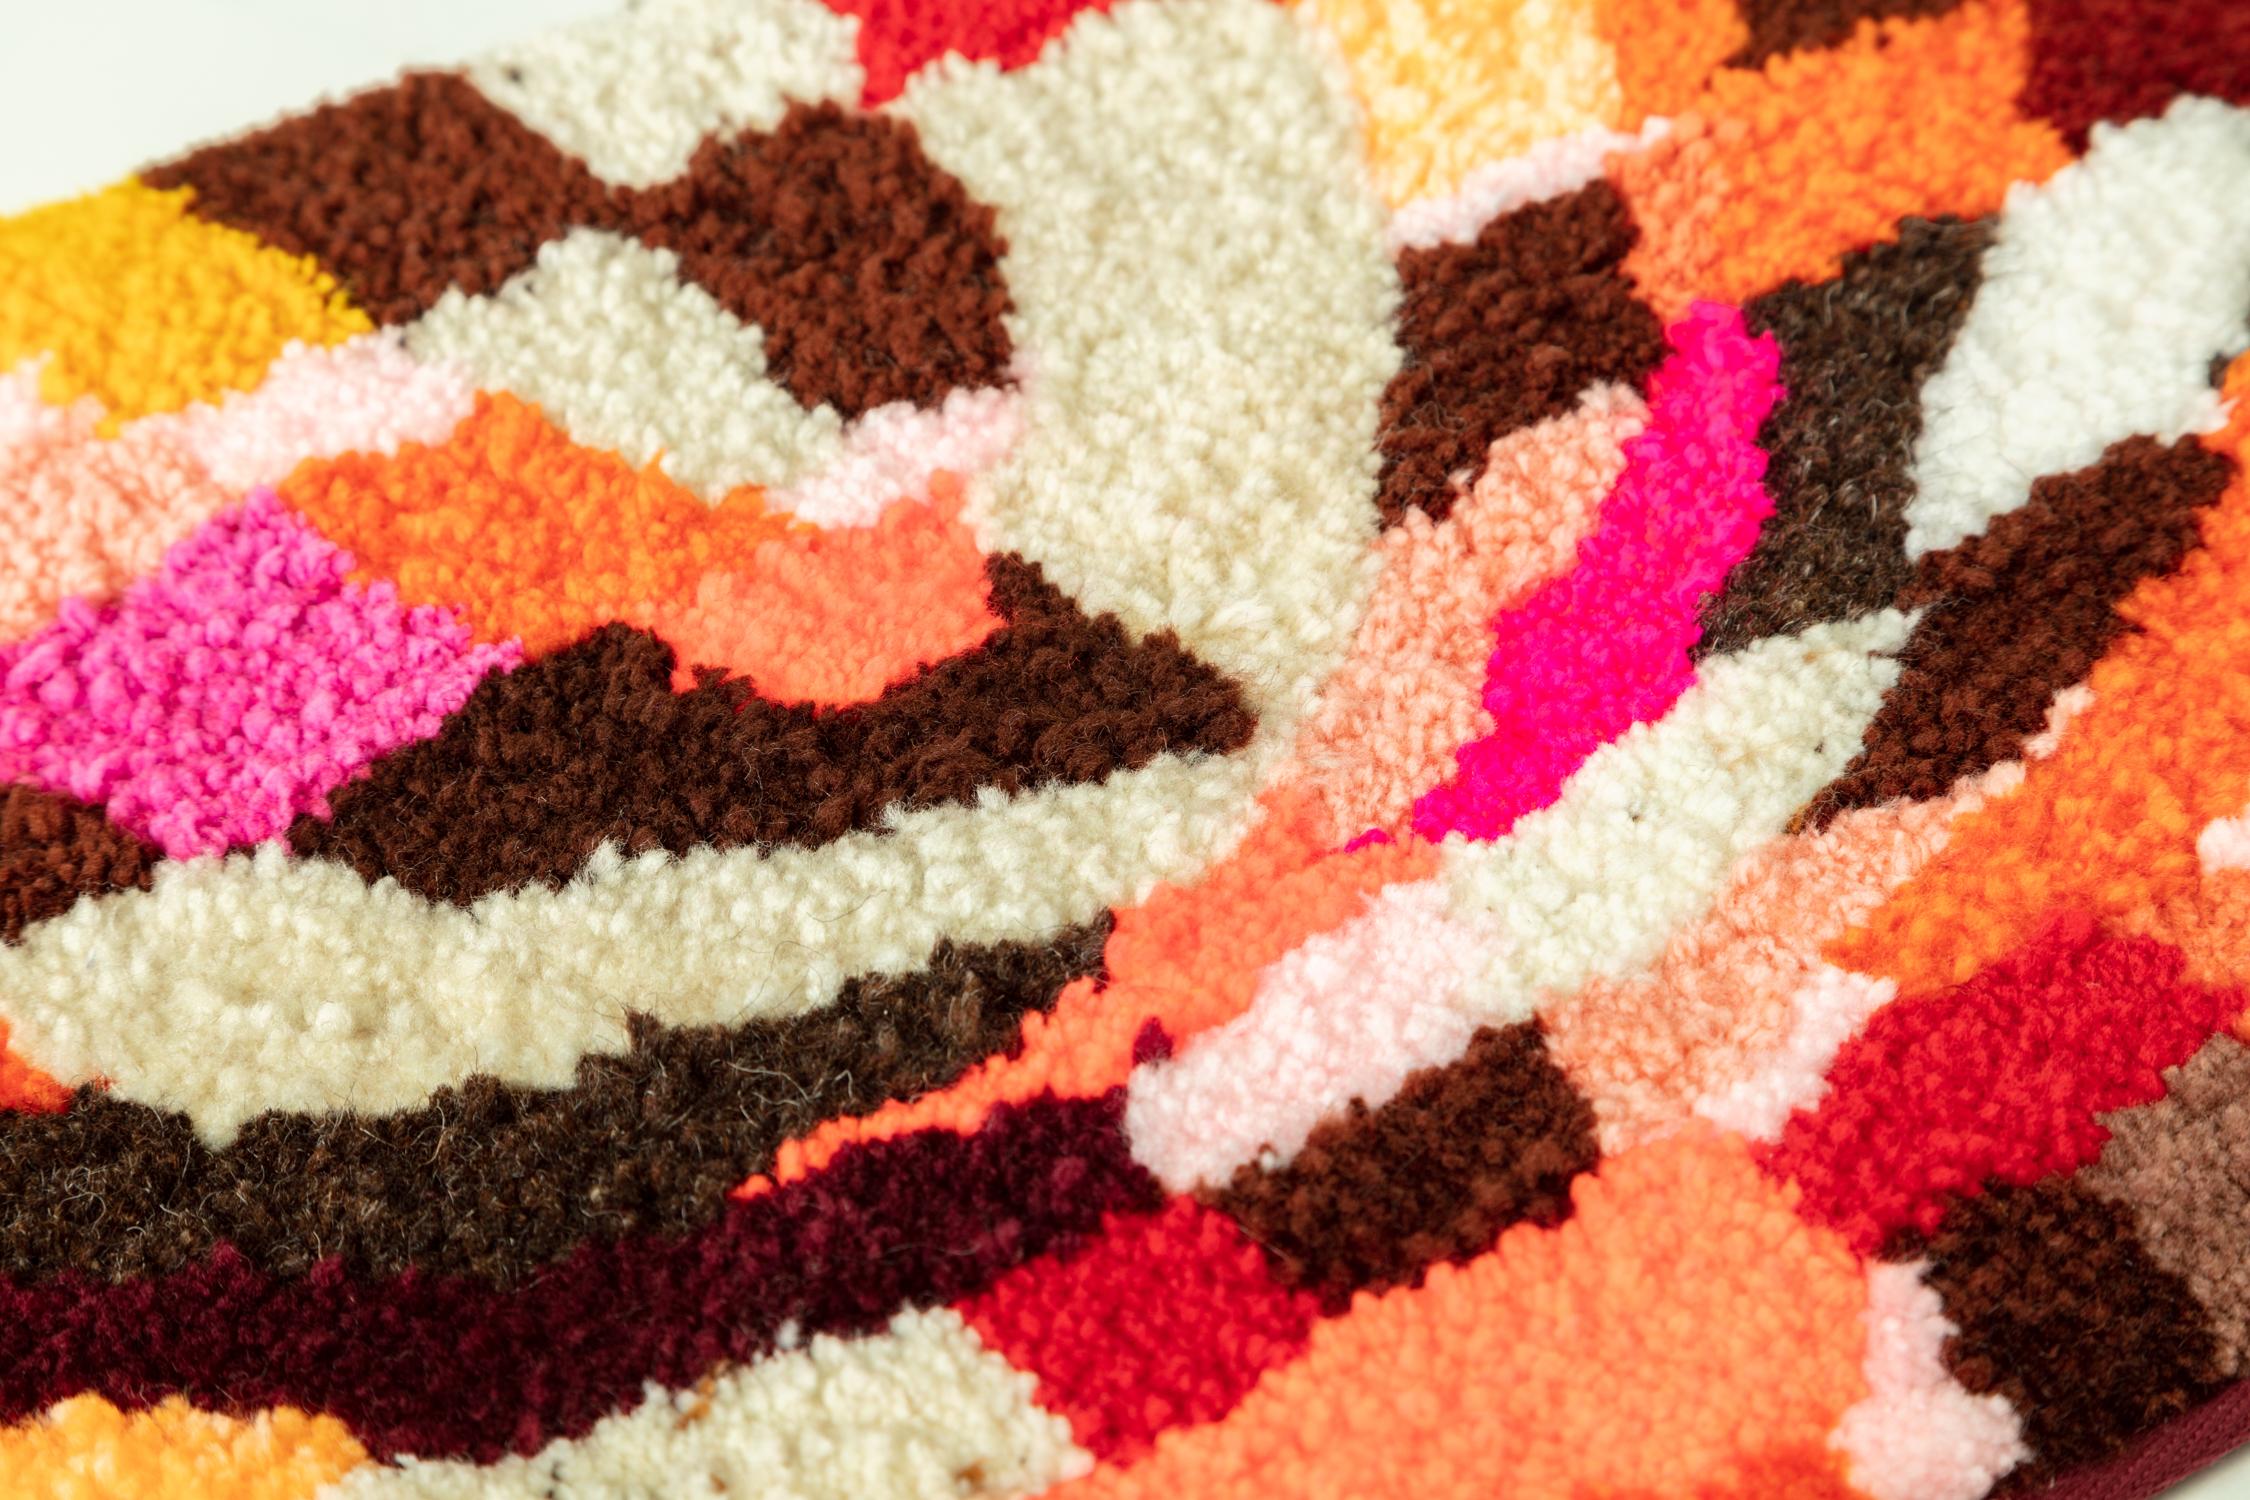 Handgetufteter Shag-Teppich von Madeline Tavernier.

2022

Materialien: Acryl- und Wollgarne.

Abmessungen: 41